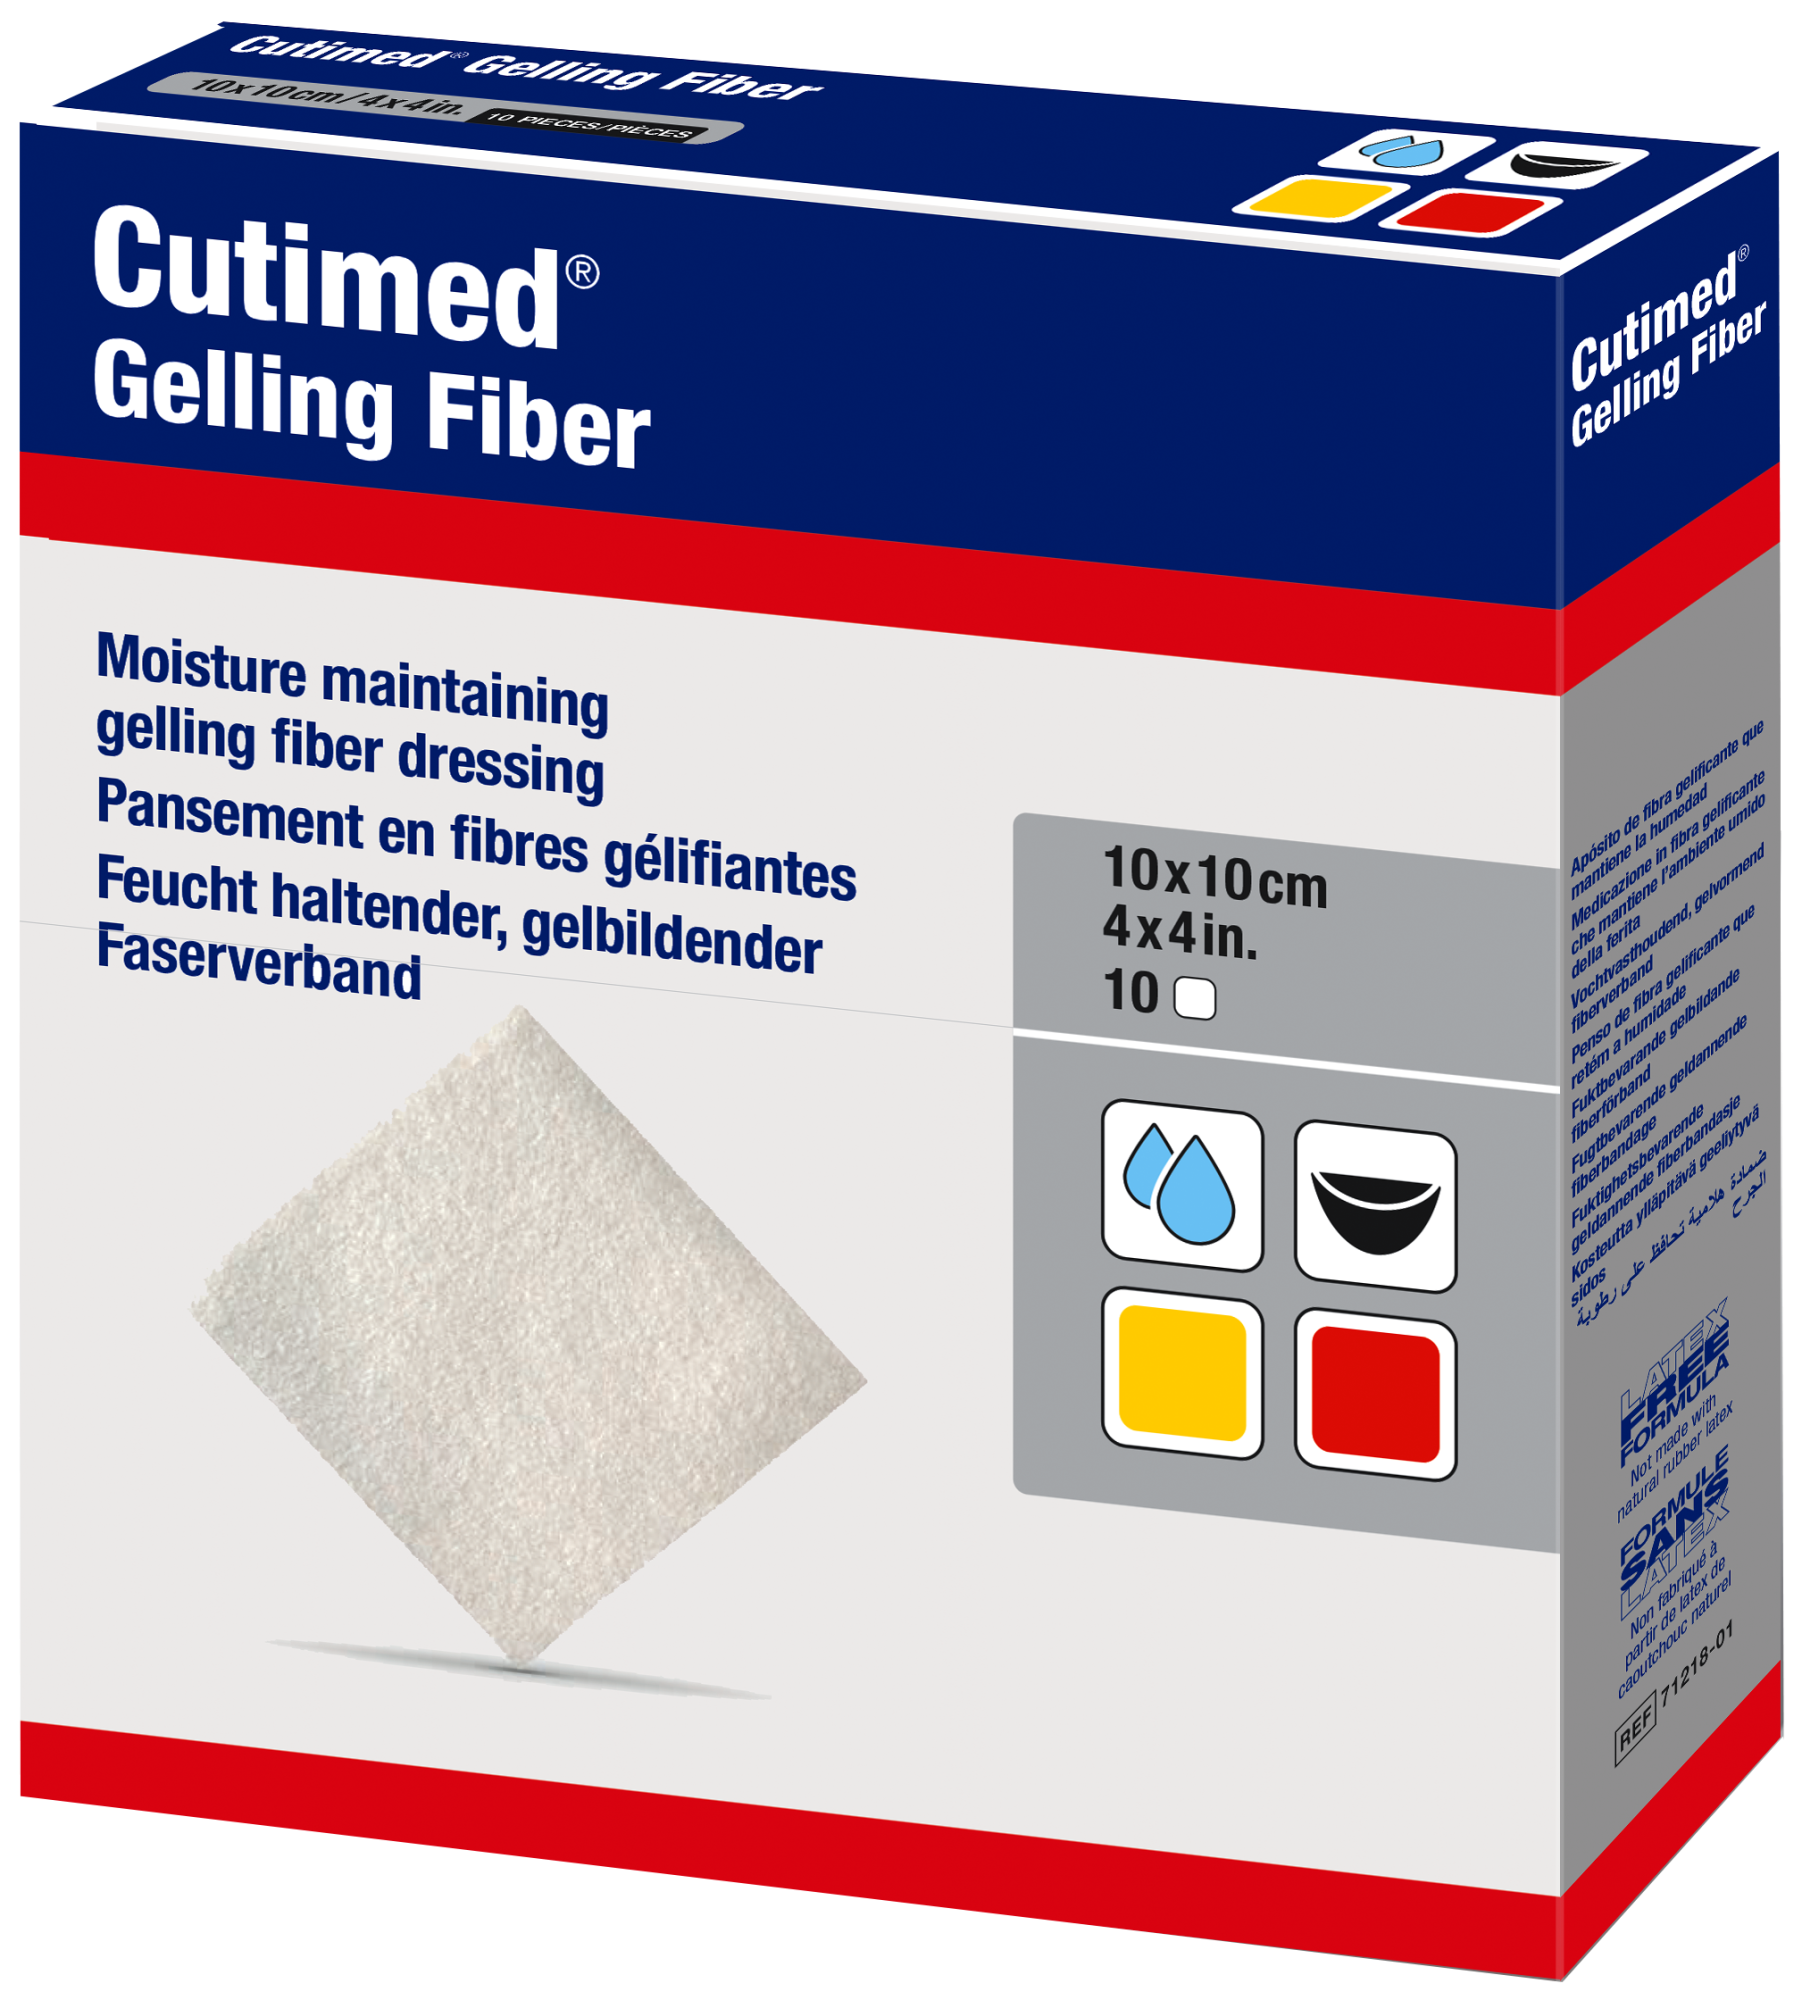 Immagine di una confezione di Cutimed® Gelling Fiber 